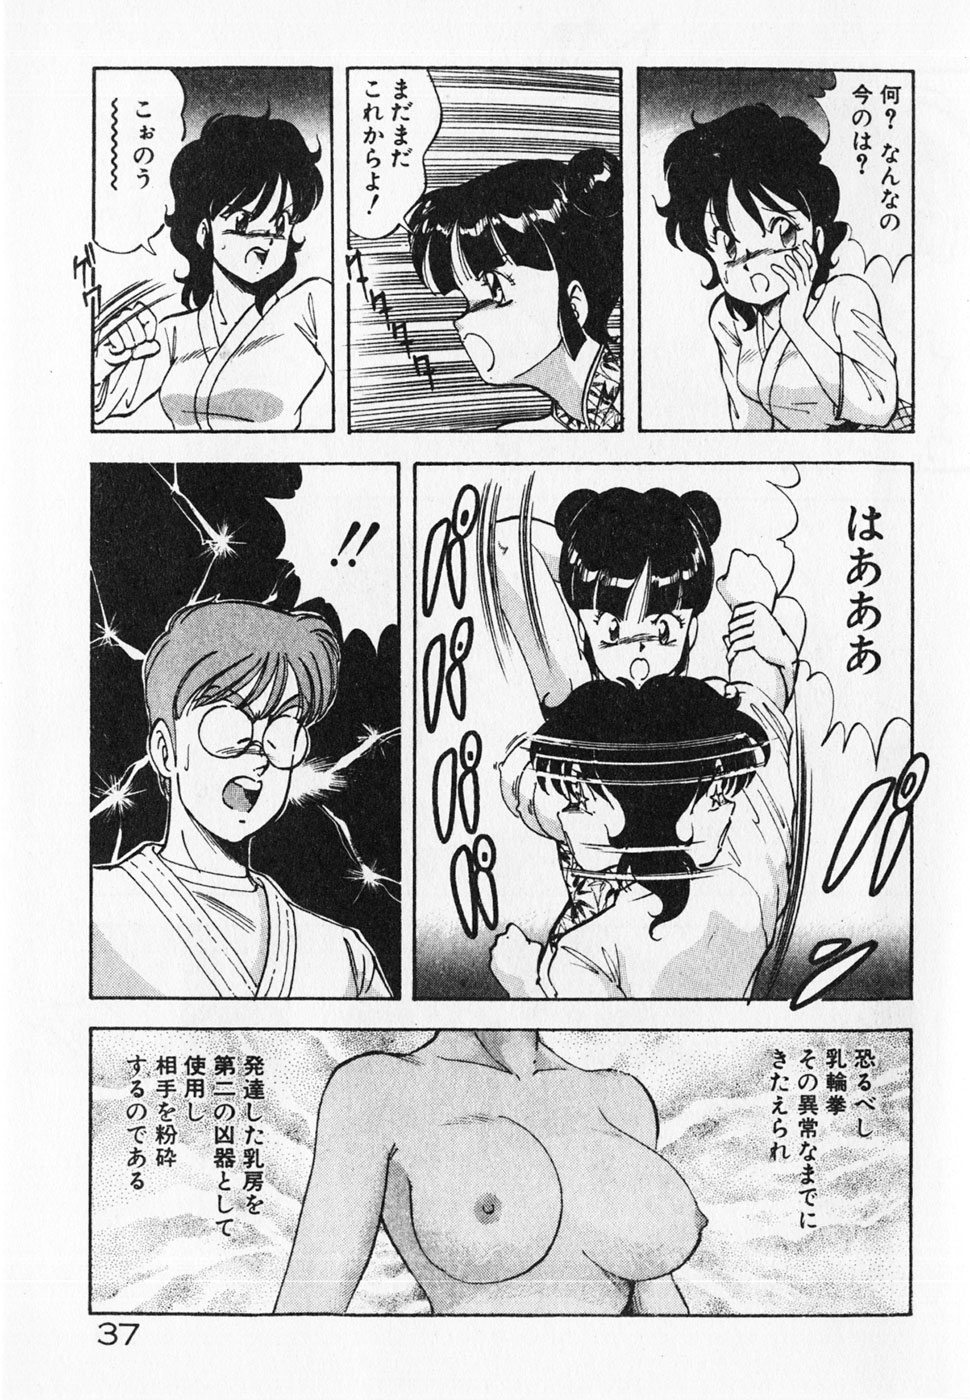 [ITOYOKO] Dokidoki Ecchi na Jikanwari page 39 full